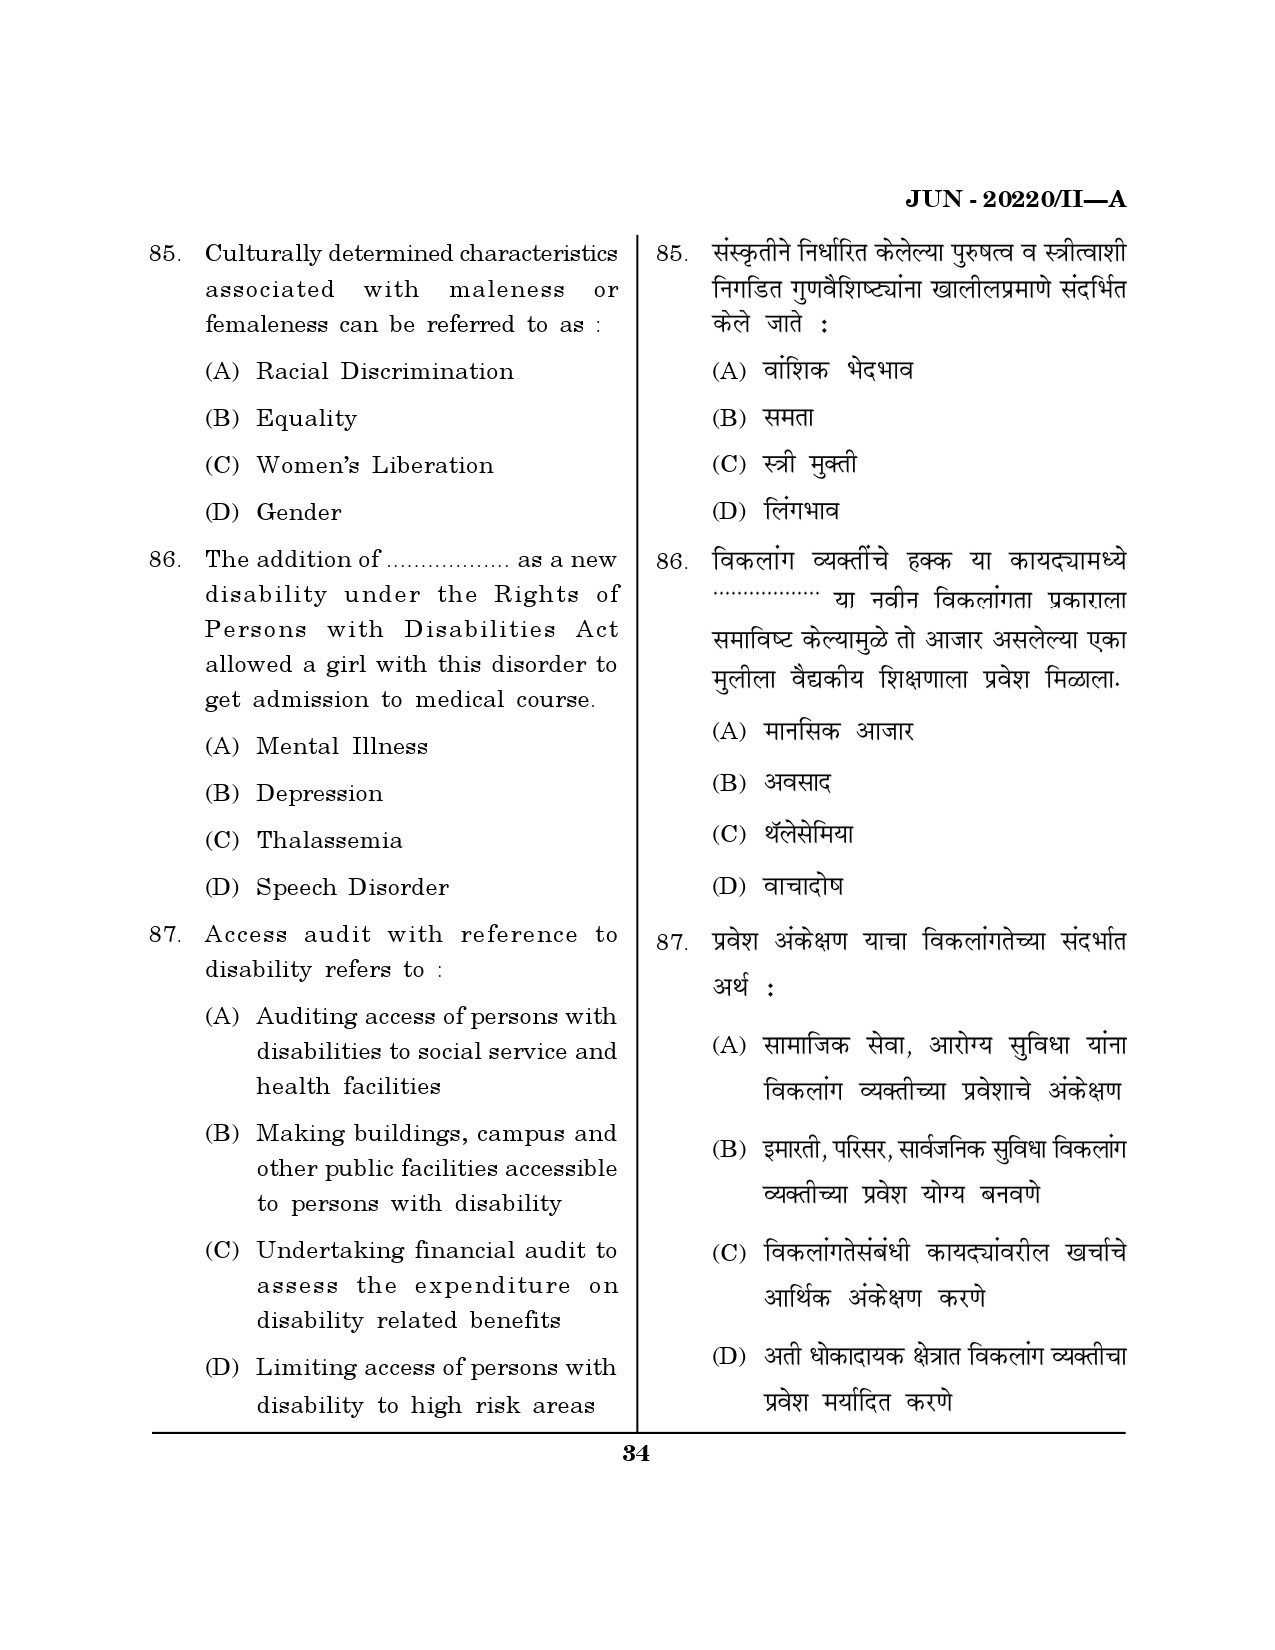 Maharashtra SET Social Work Question Paper II June 2020 33